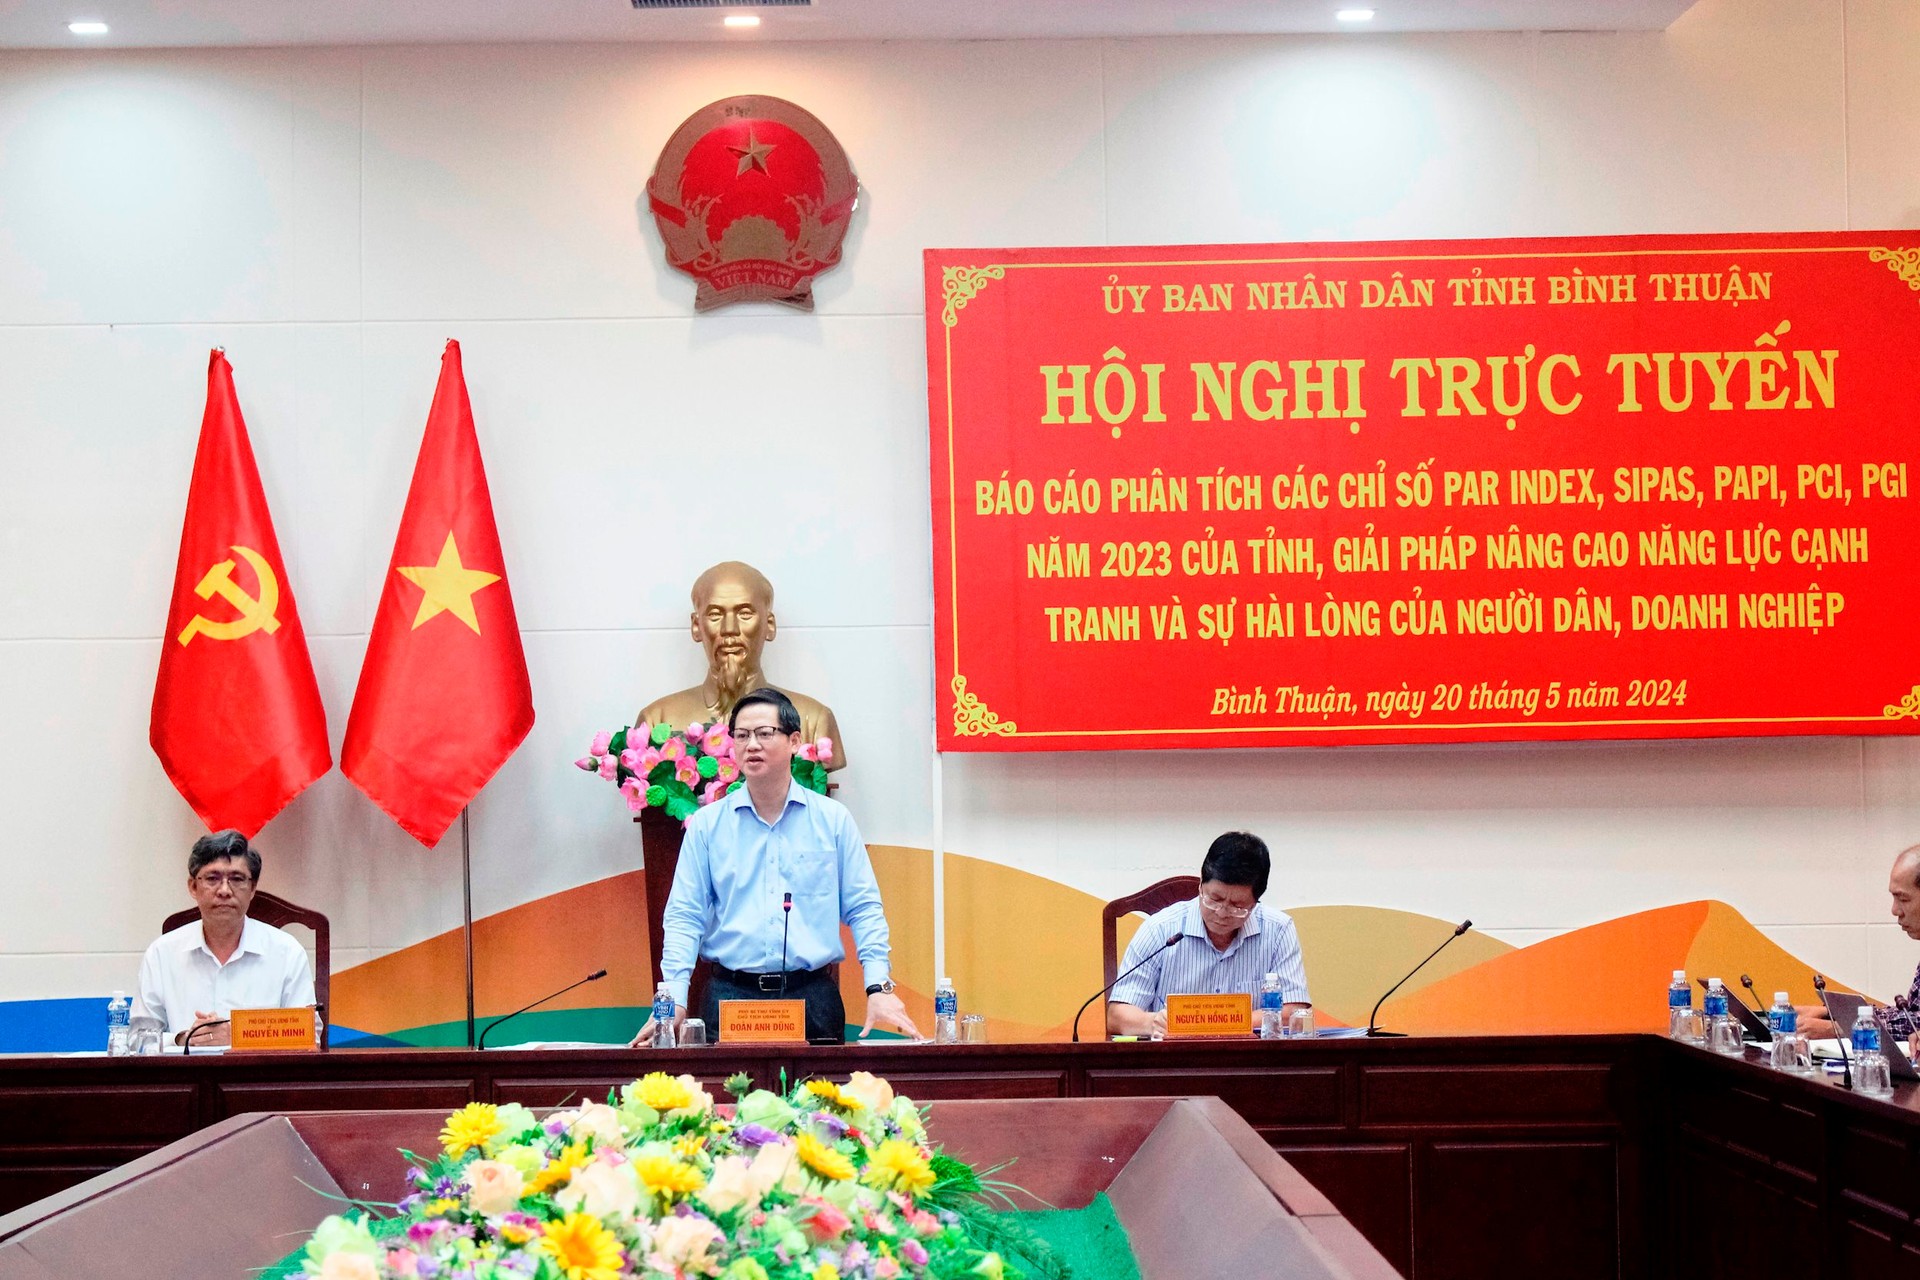 Sự kiện - Bình Thuận đề ra giải pháp nâng cao năng lực cạnh tranh và sự hài lòng của người dân